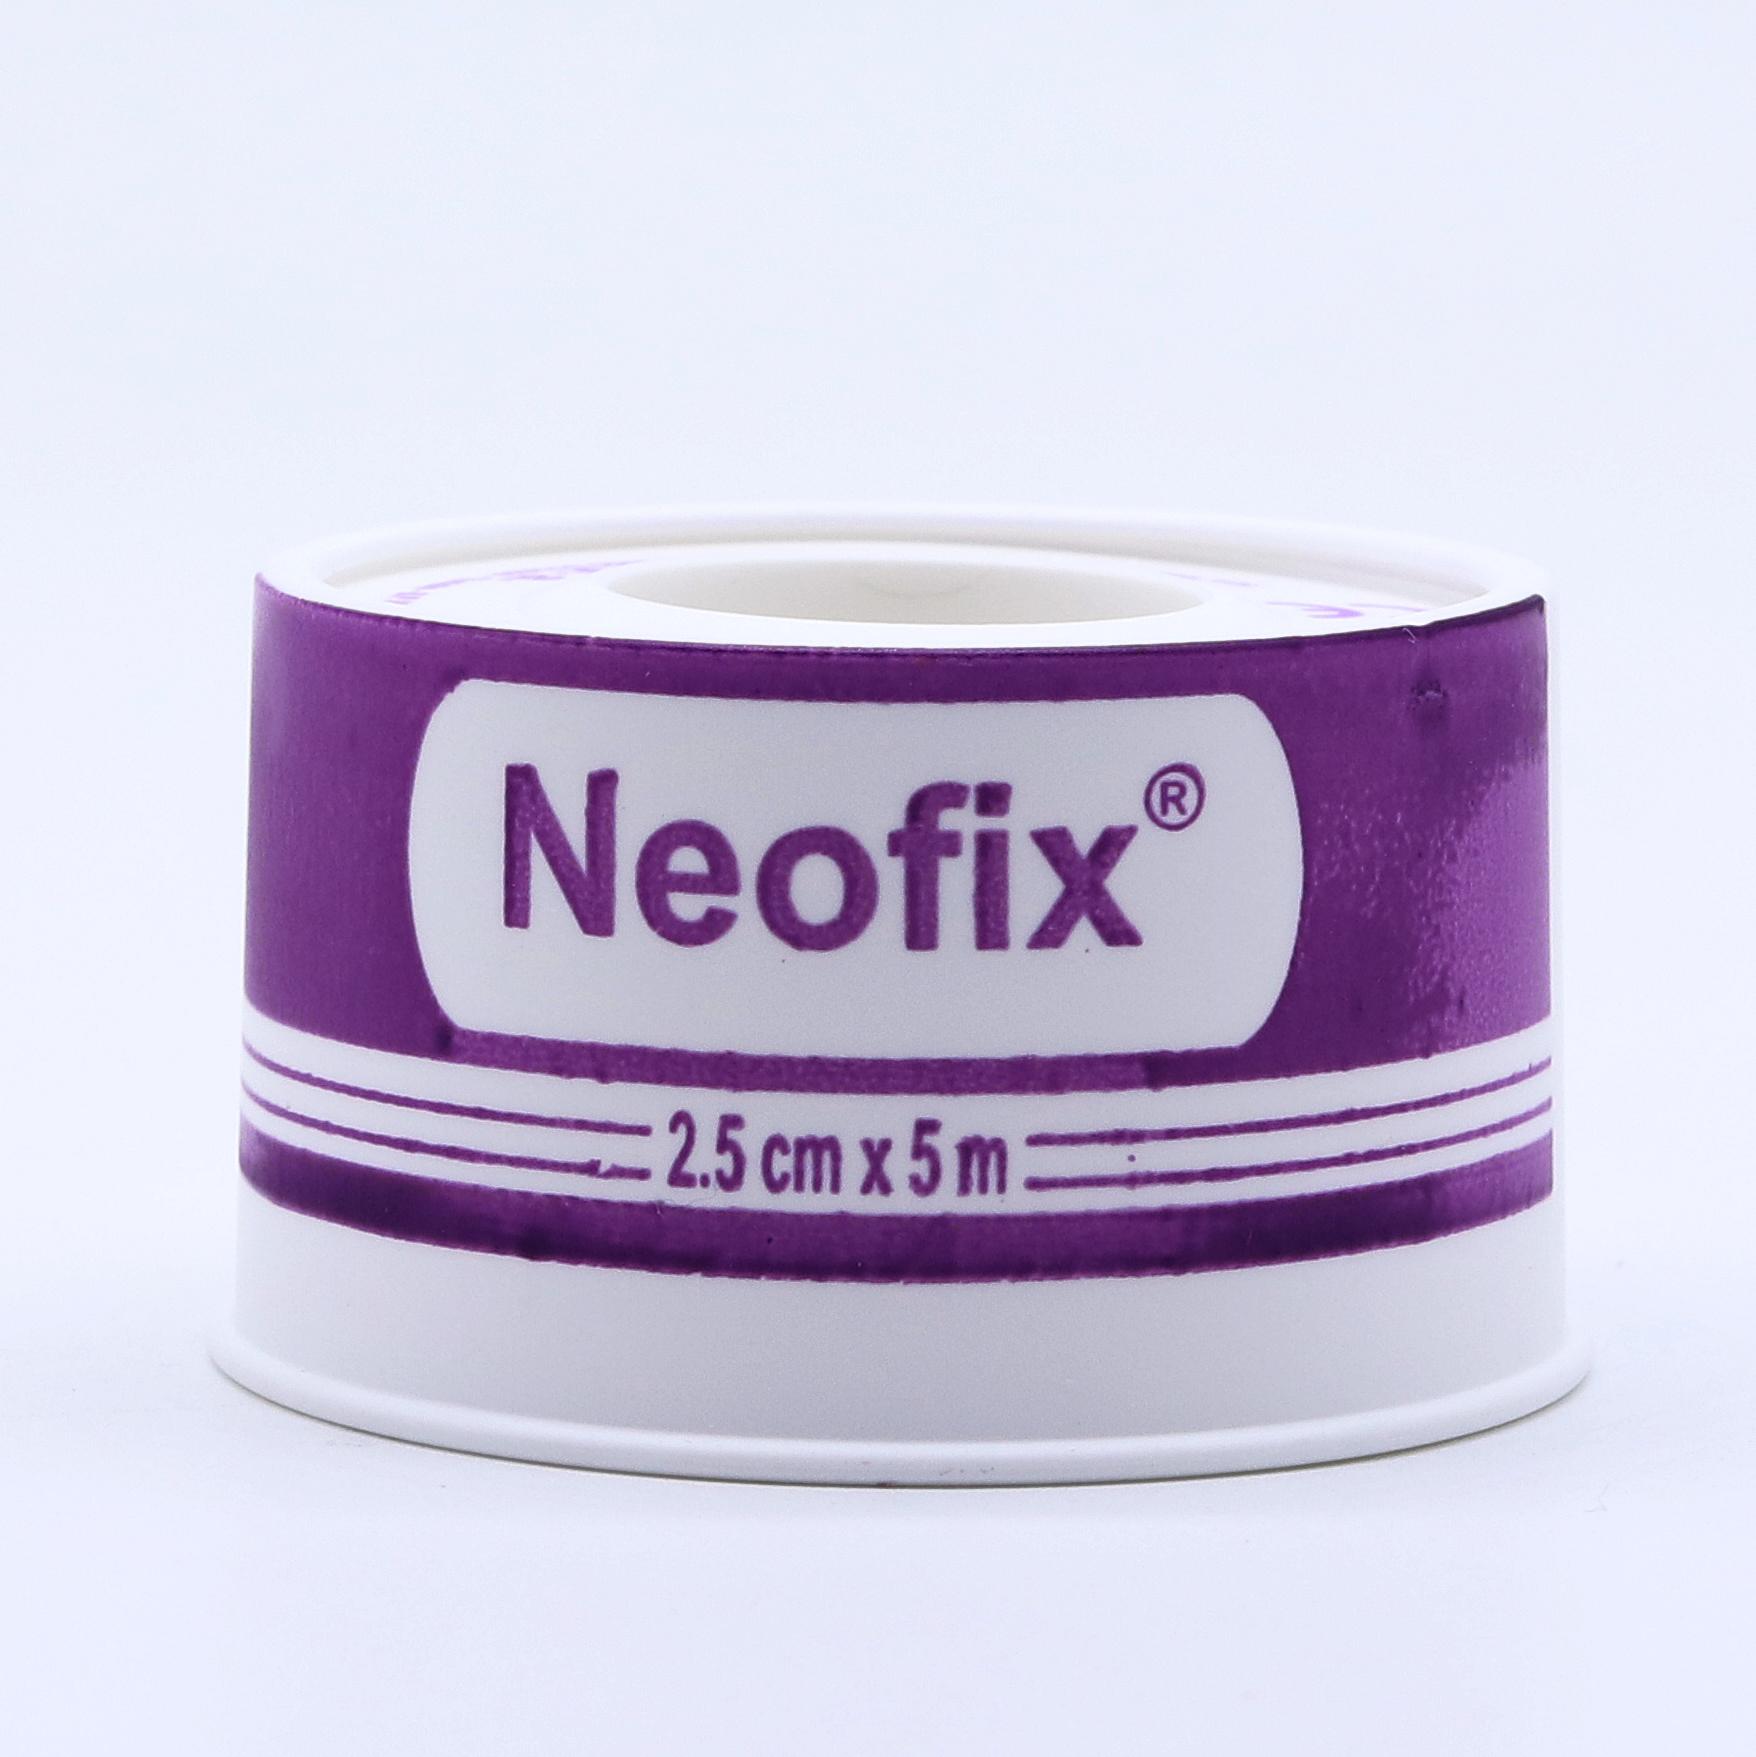 Neofix